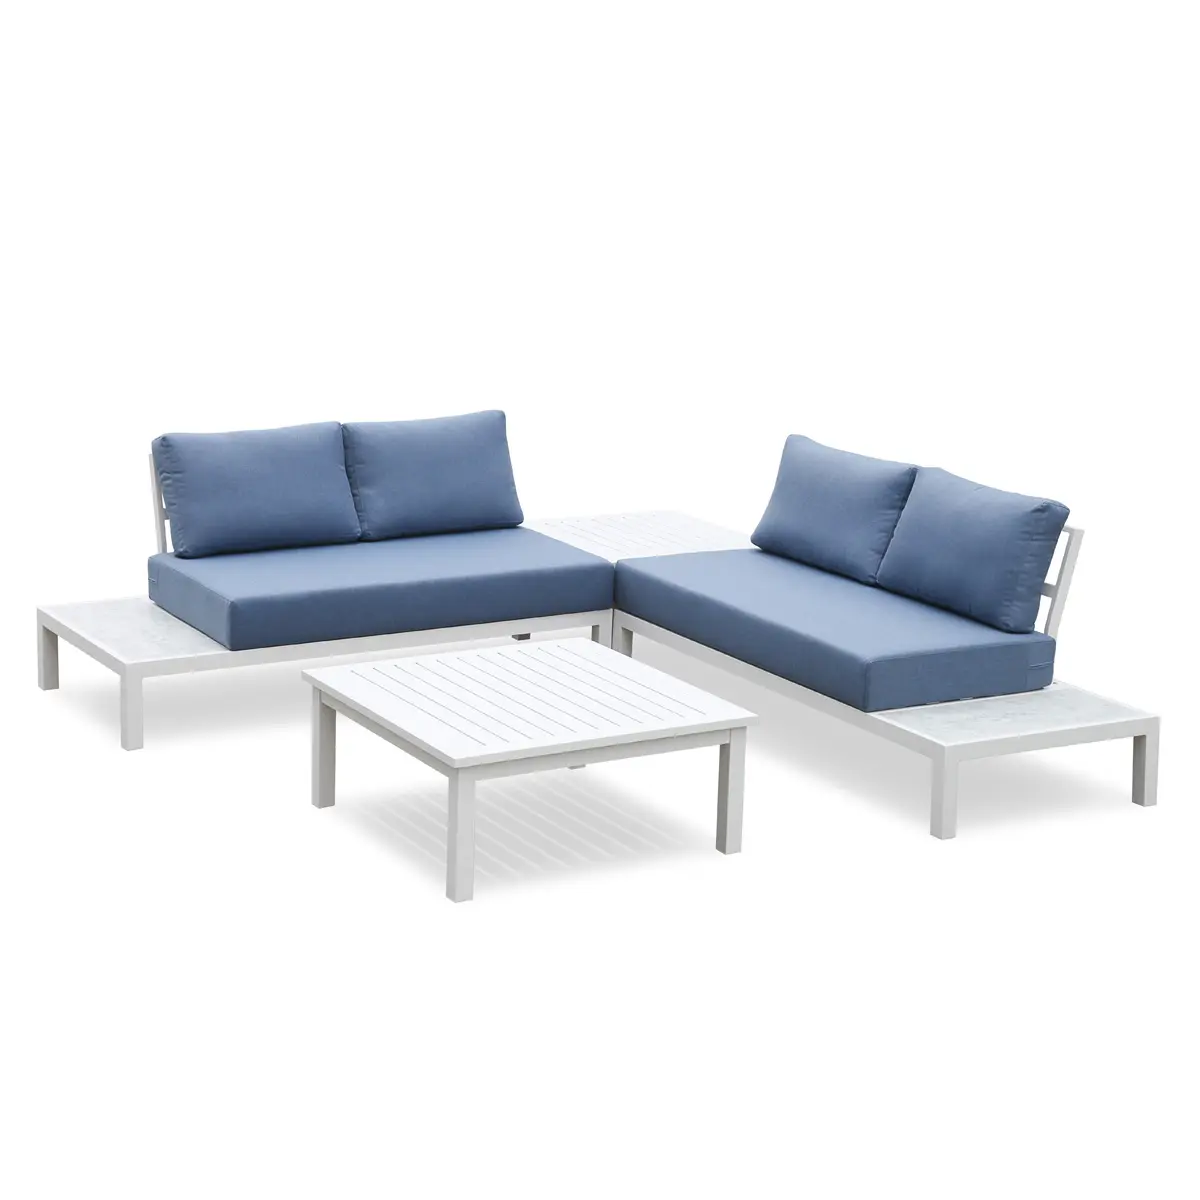 Conjunto de sofás de exterior seccionales modernos comerciales, tumbonas de plataforma de aluminio blanco, juego de muebles de jardín